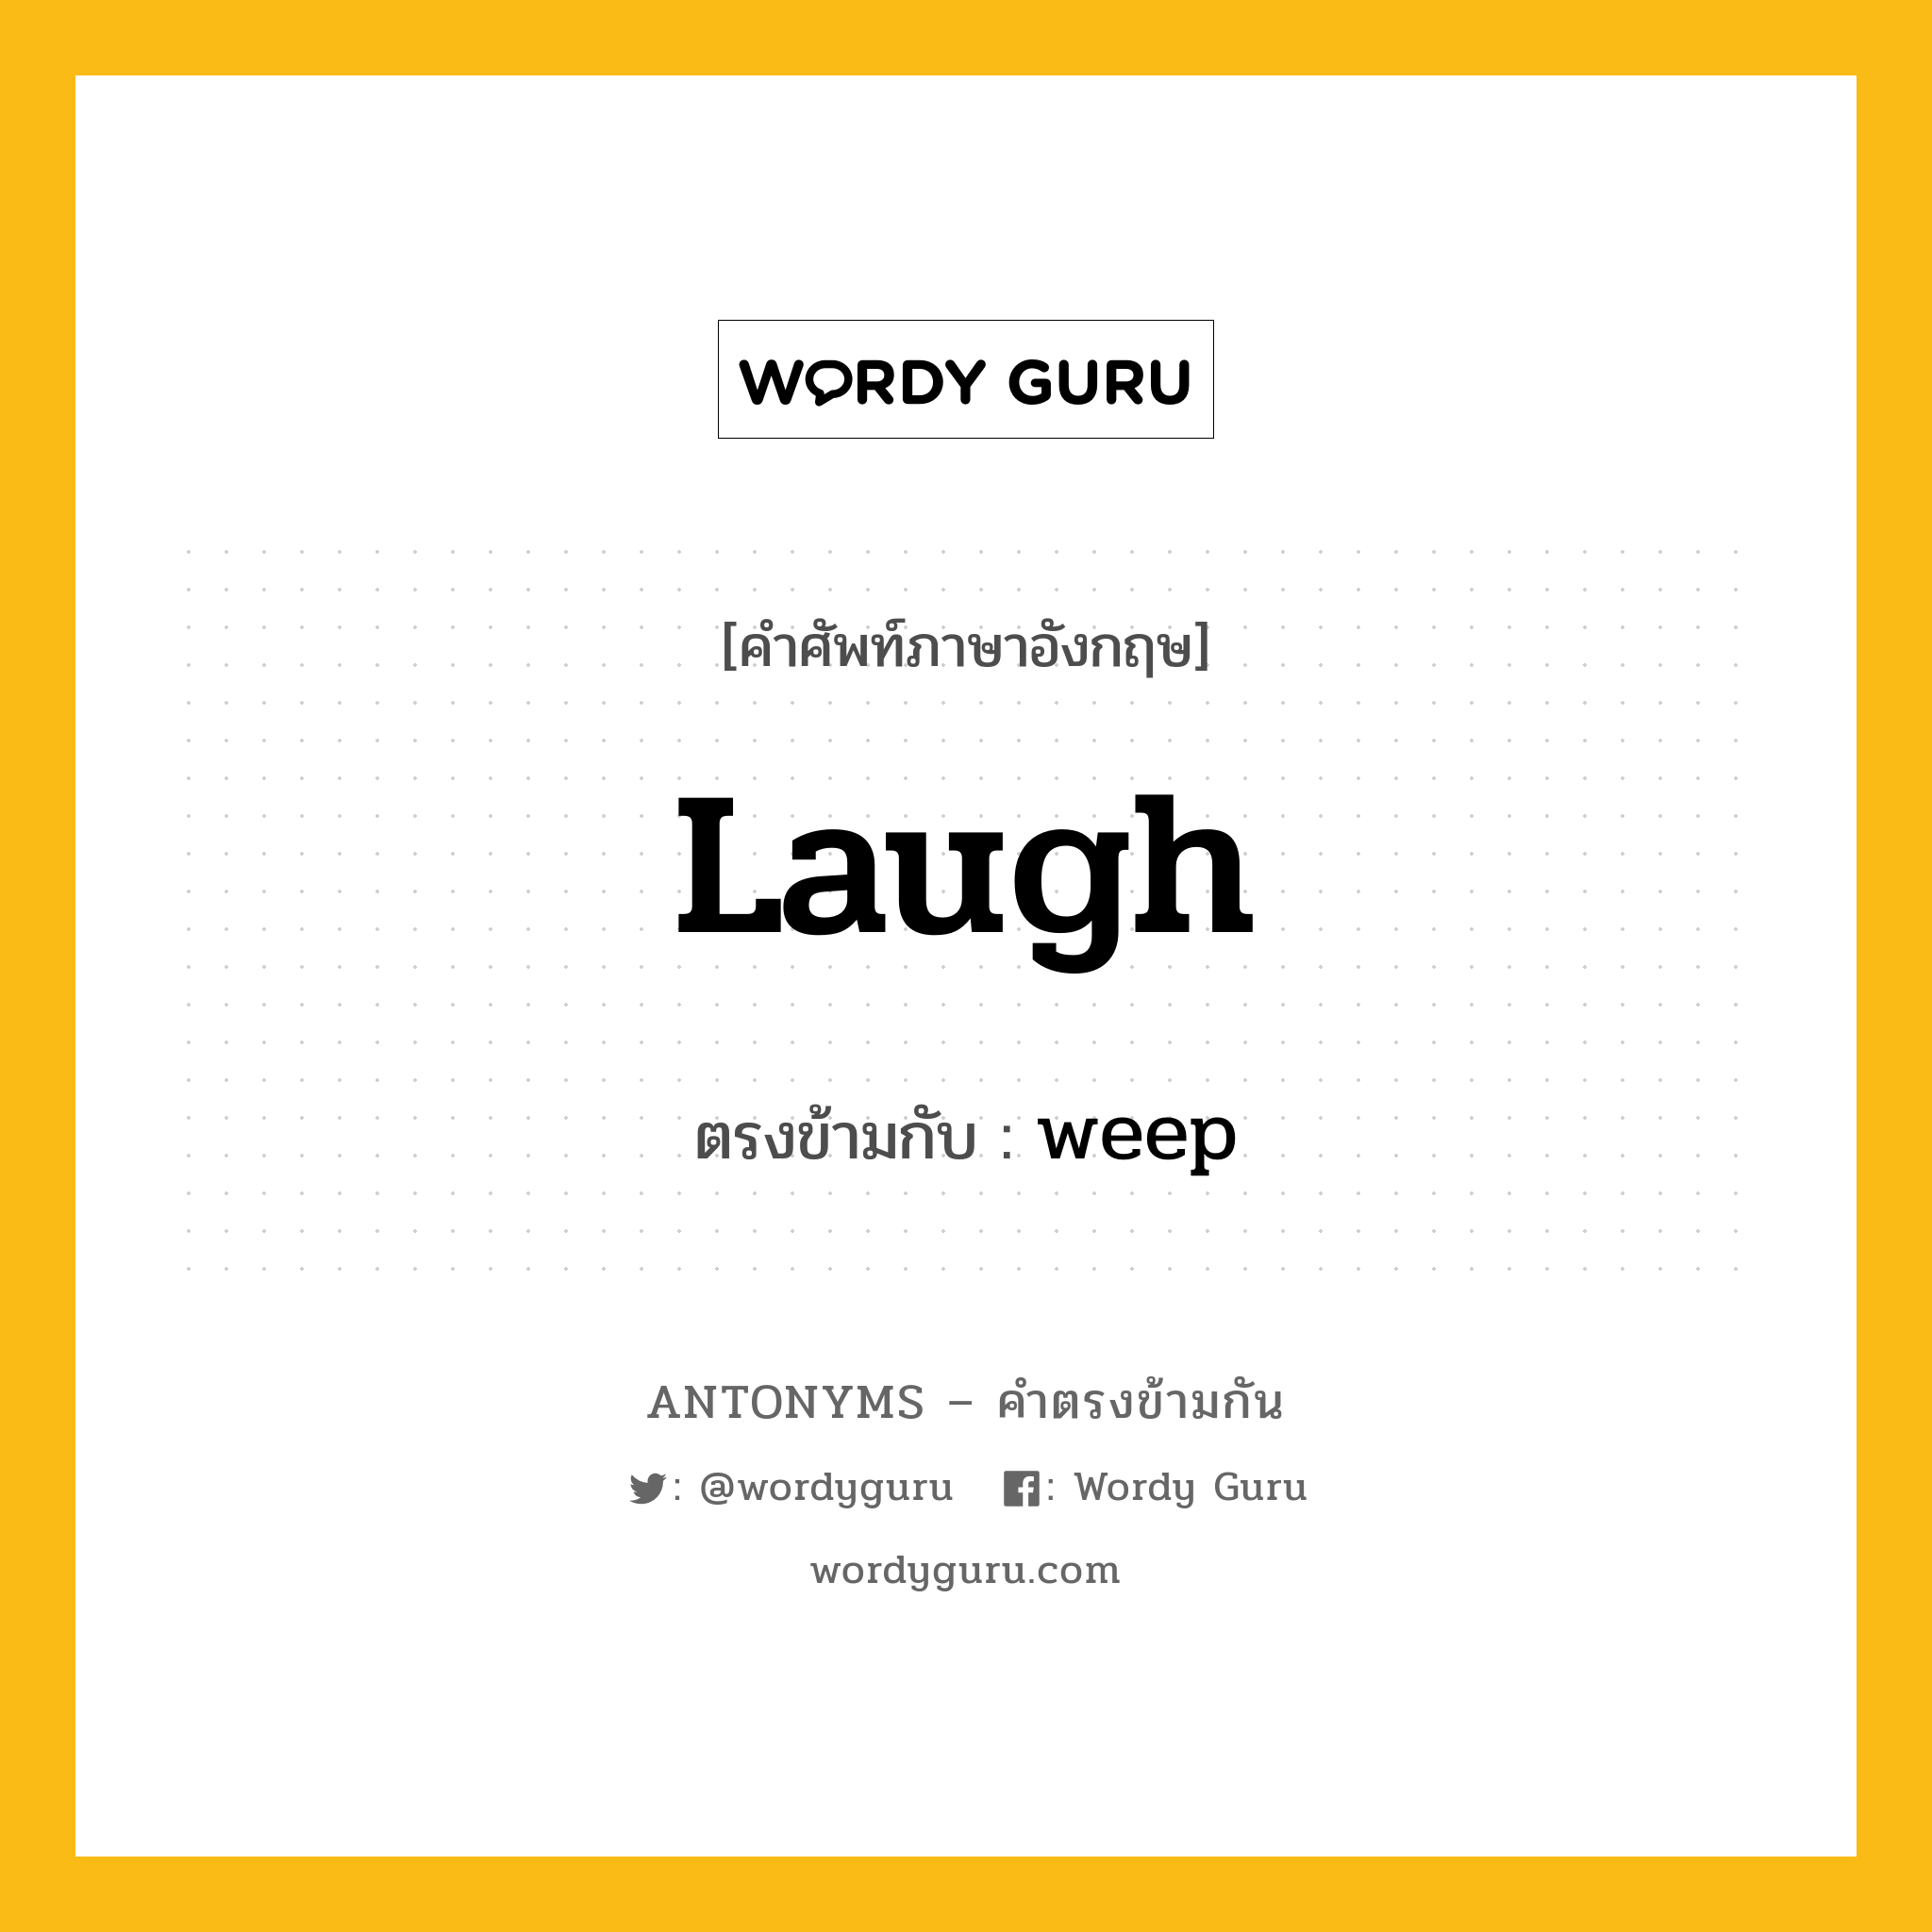 laugh เป็นคำตรงข้ามกับคำไหนบ้าง?, คำศัพท์ภาษาอังกฤษ laugh ตรงข้ามกับ weep หมวด weep